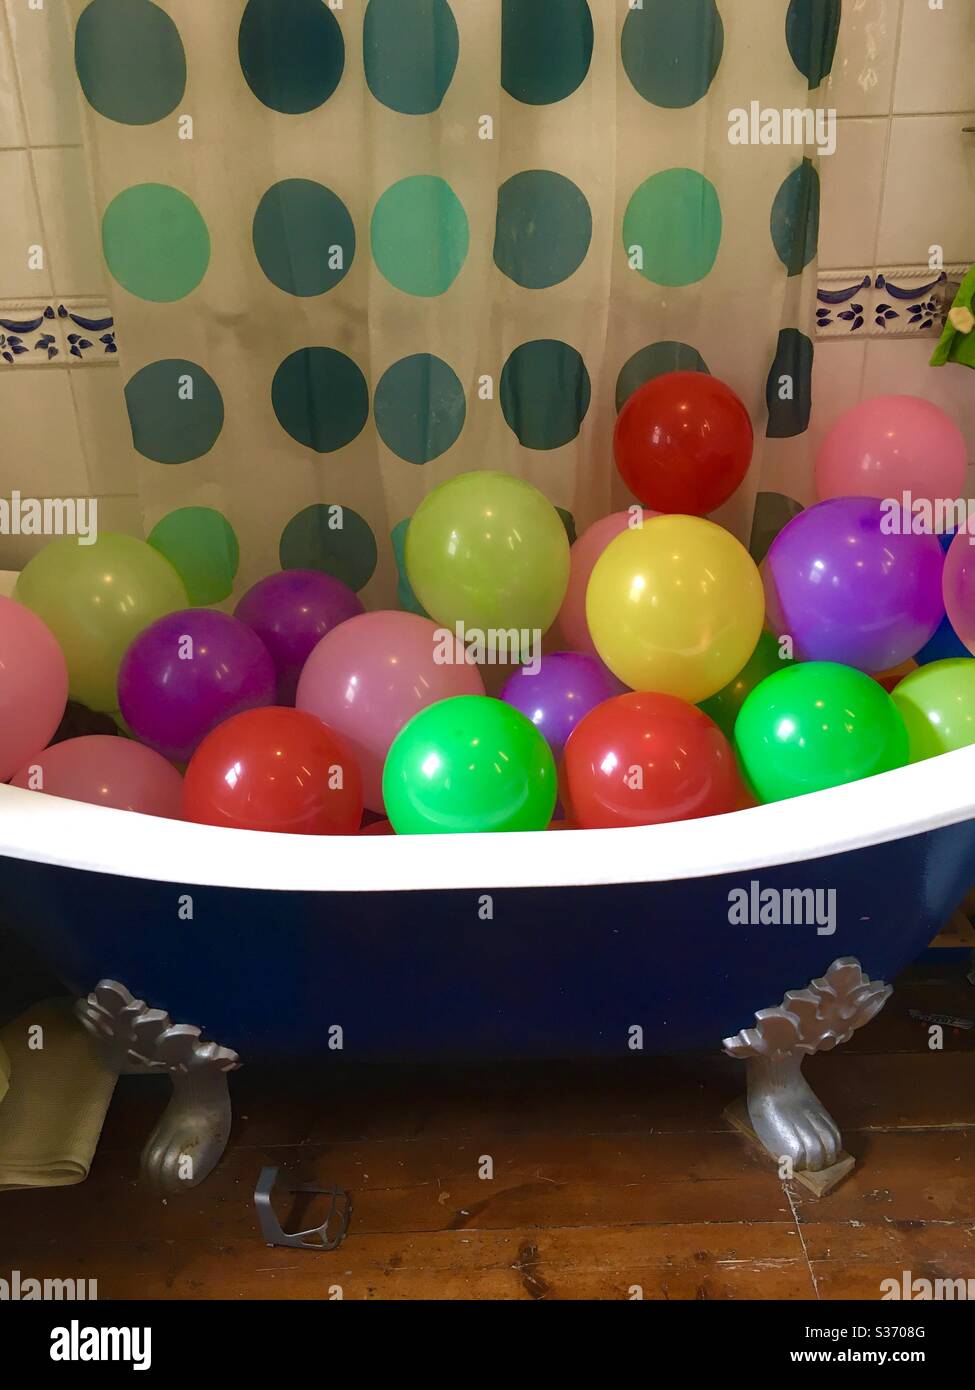 Balloons in a bath Stock Photo